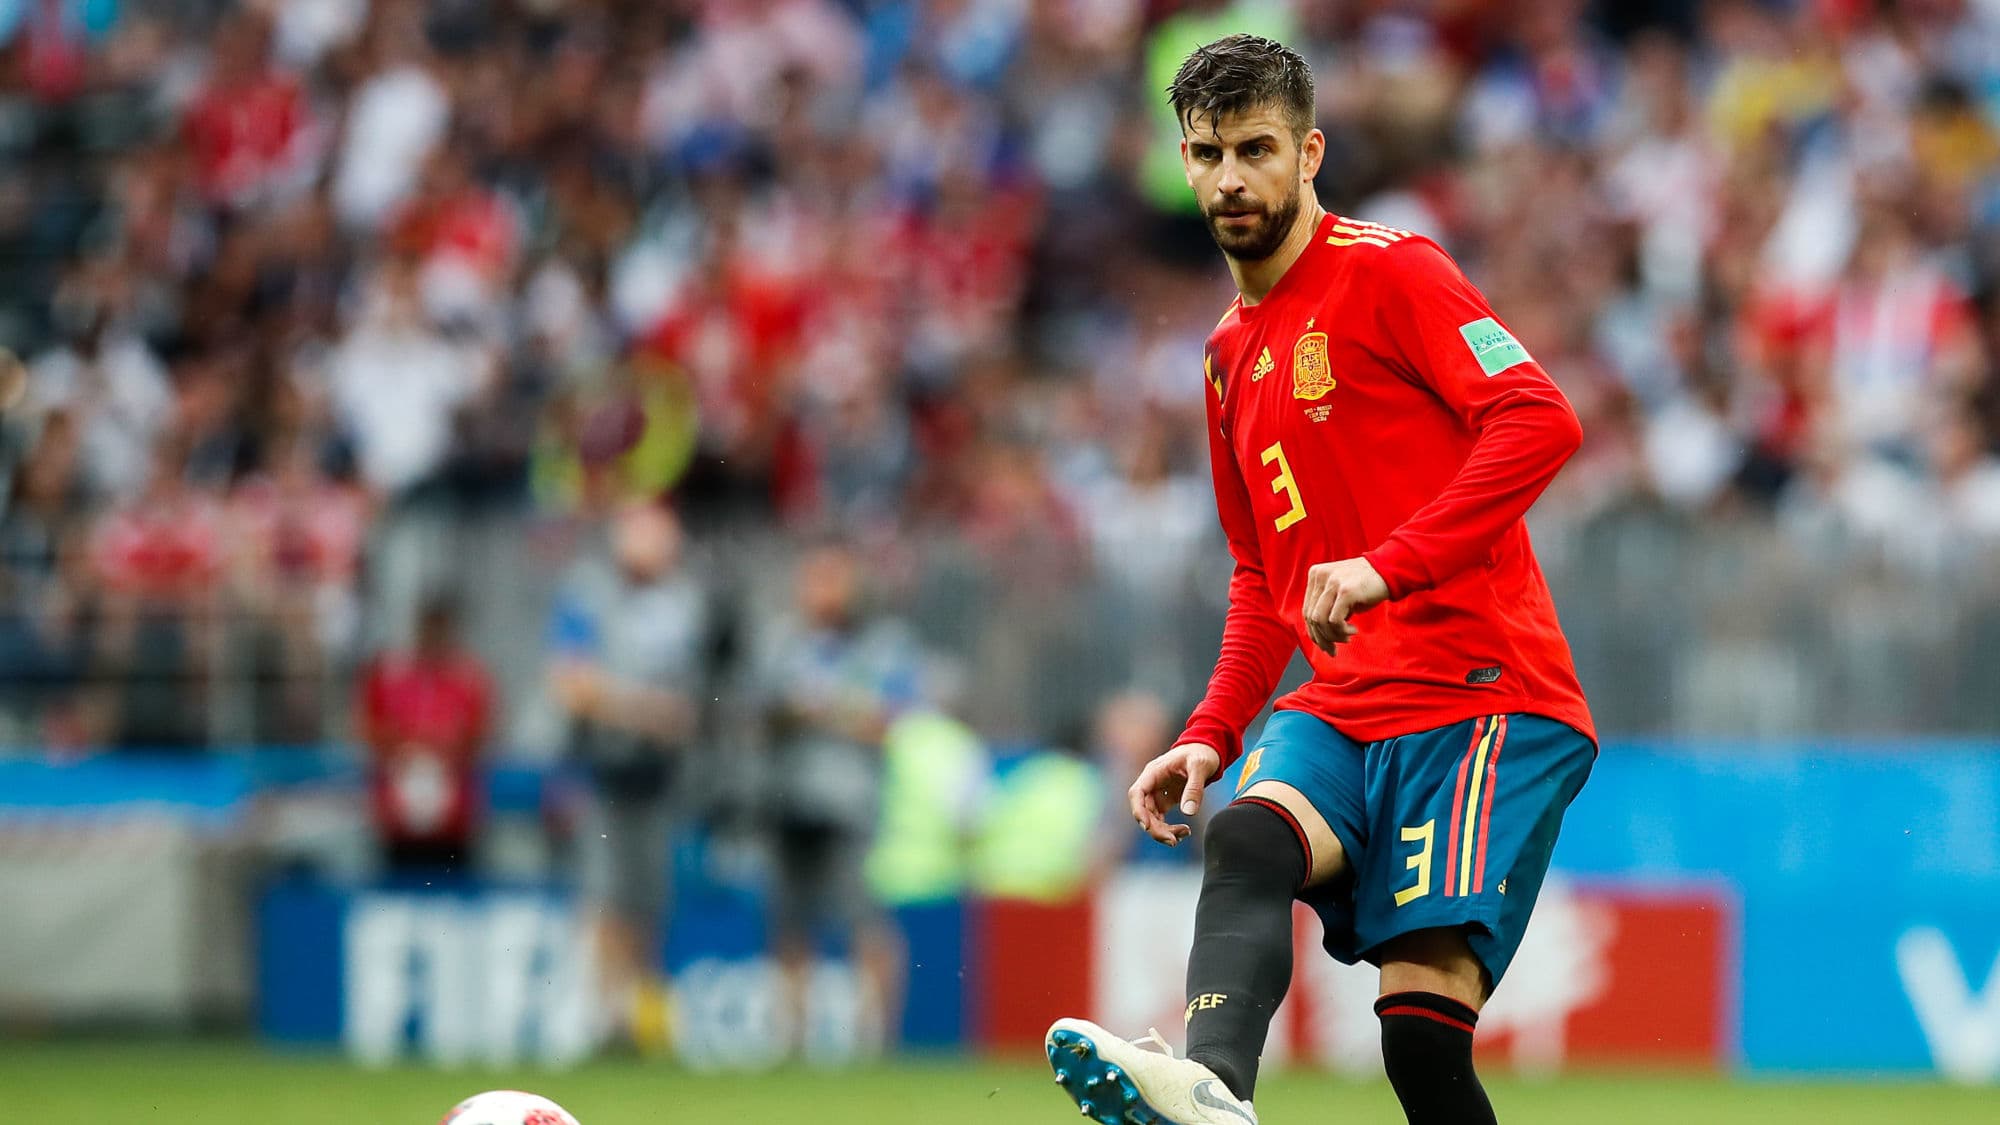 Diretta – Coppa del Mondo: Pique è preselezionato con la Spagna